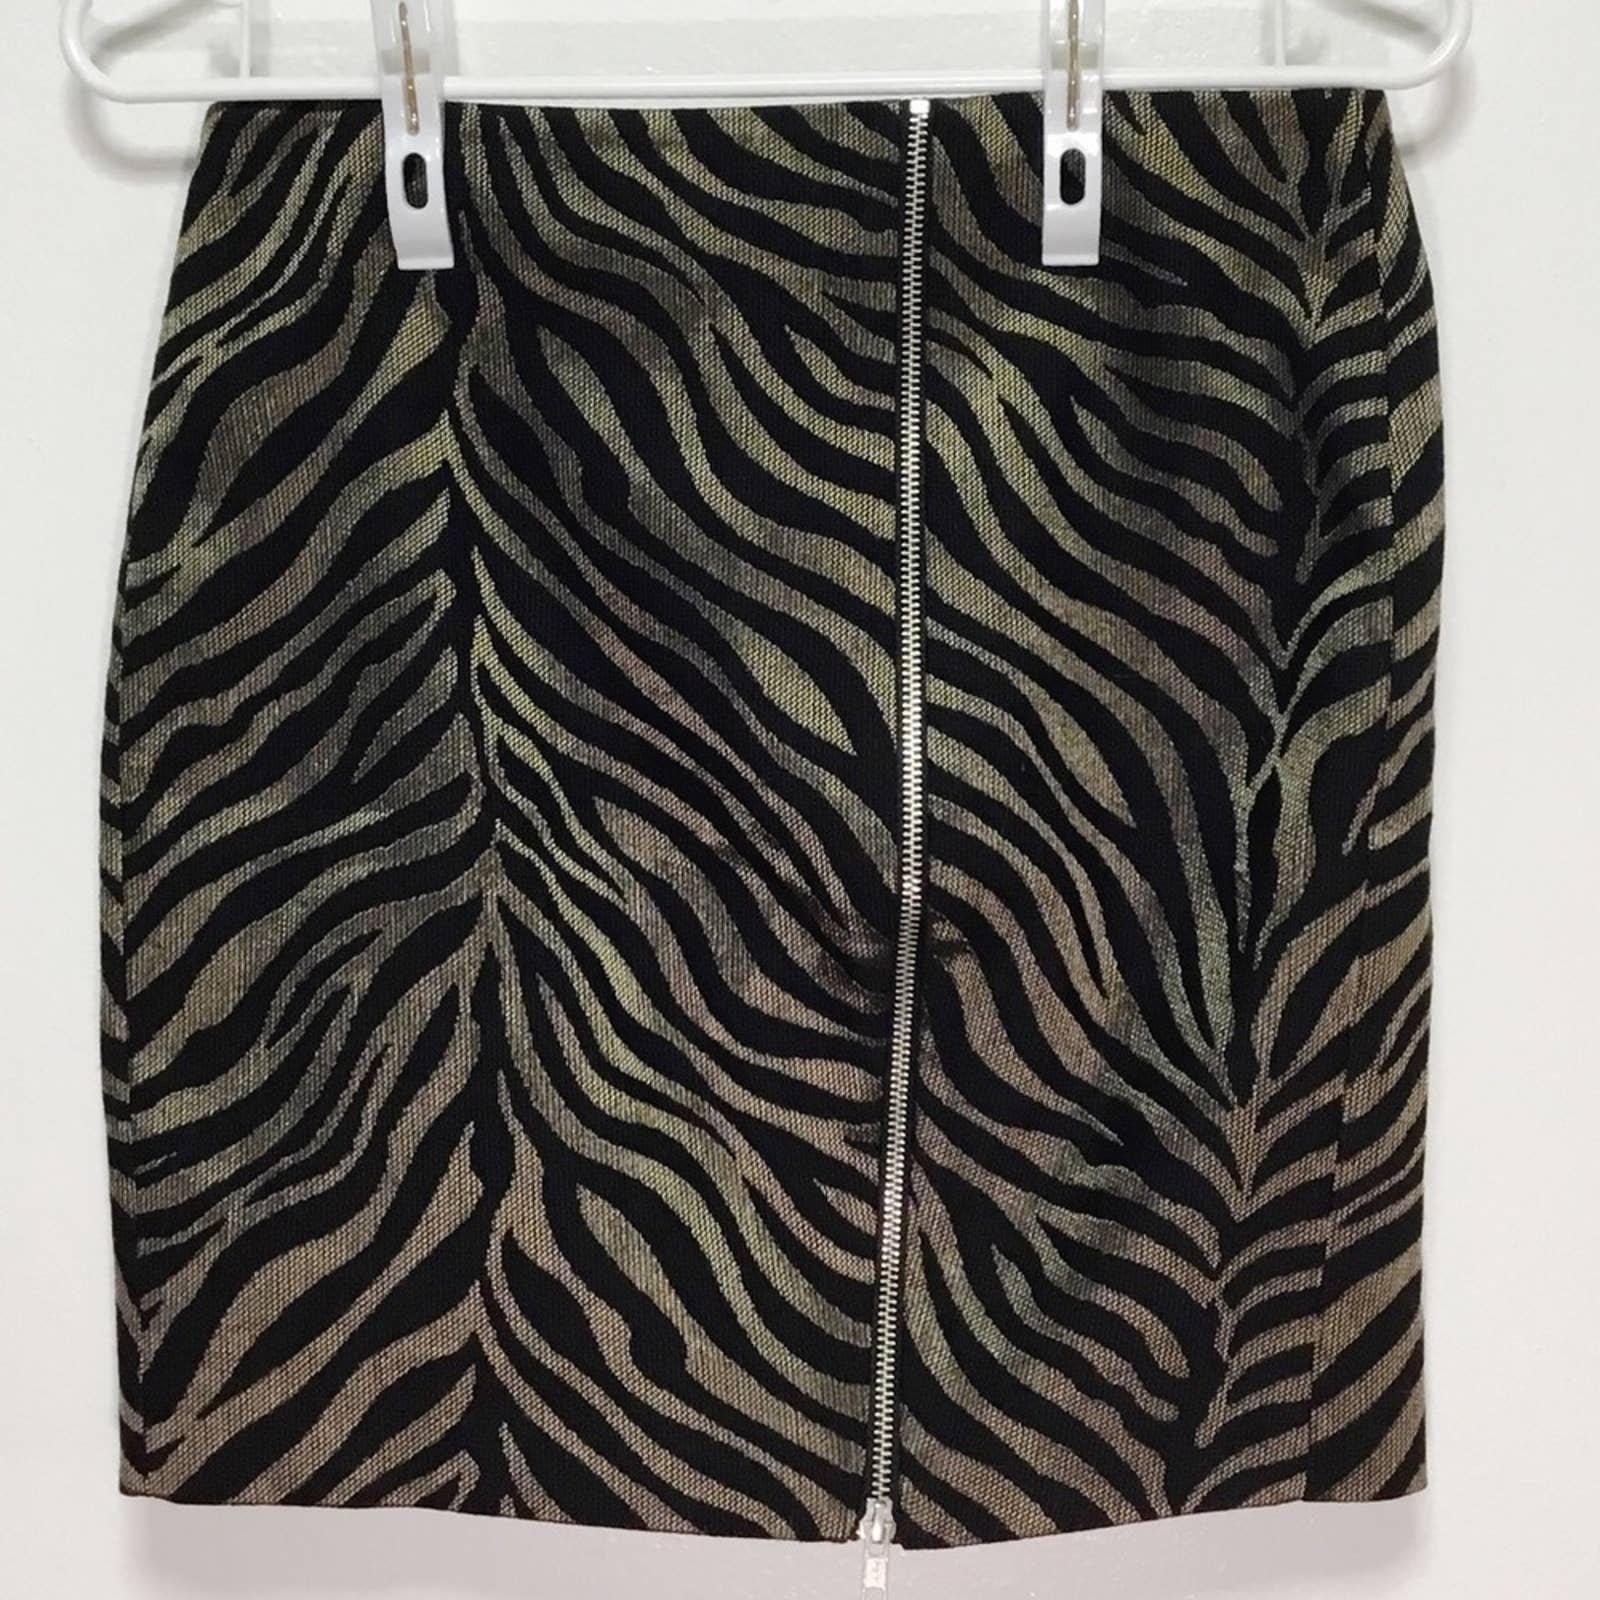 Beautiful The Kooples Tiger Zipper Mini Skirt hFTPX5z0w